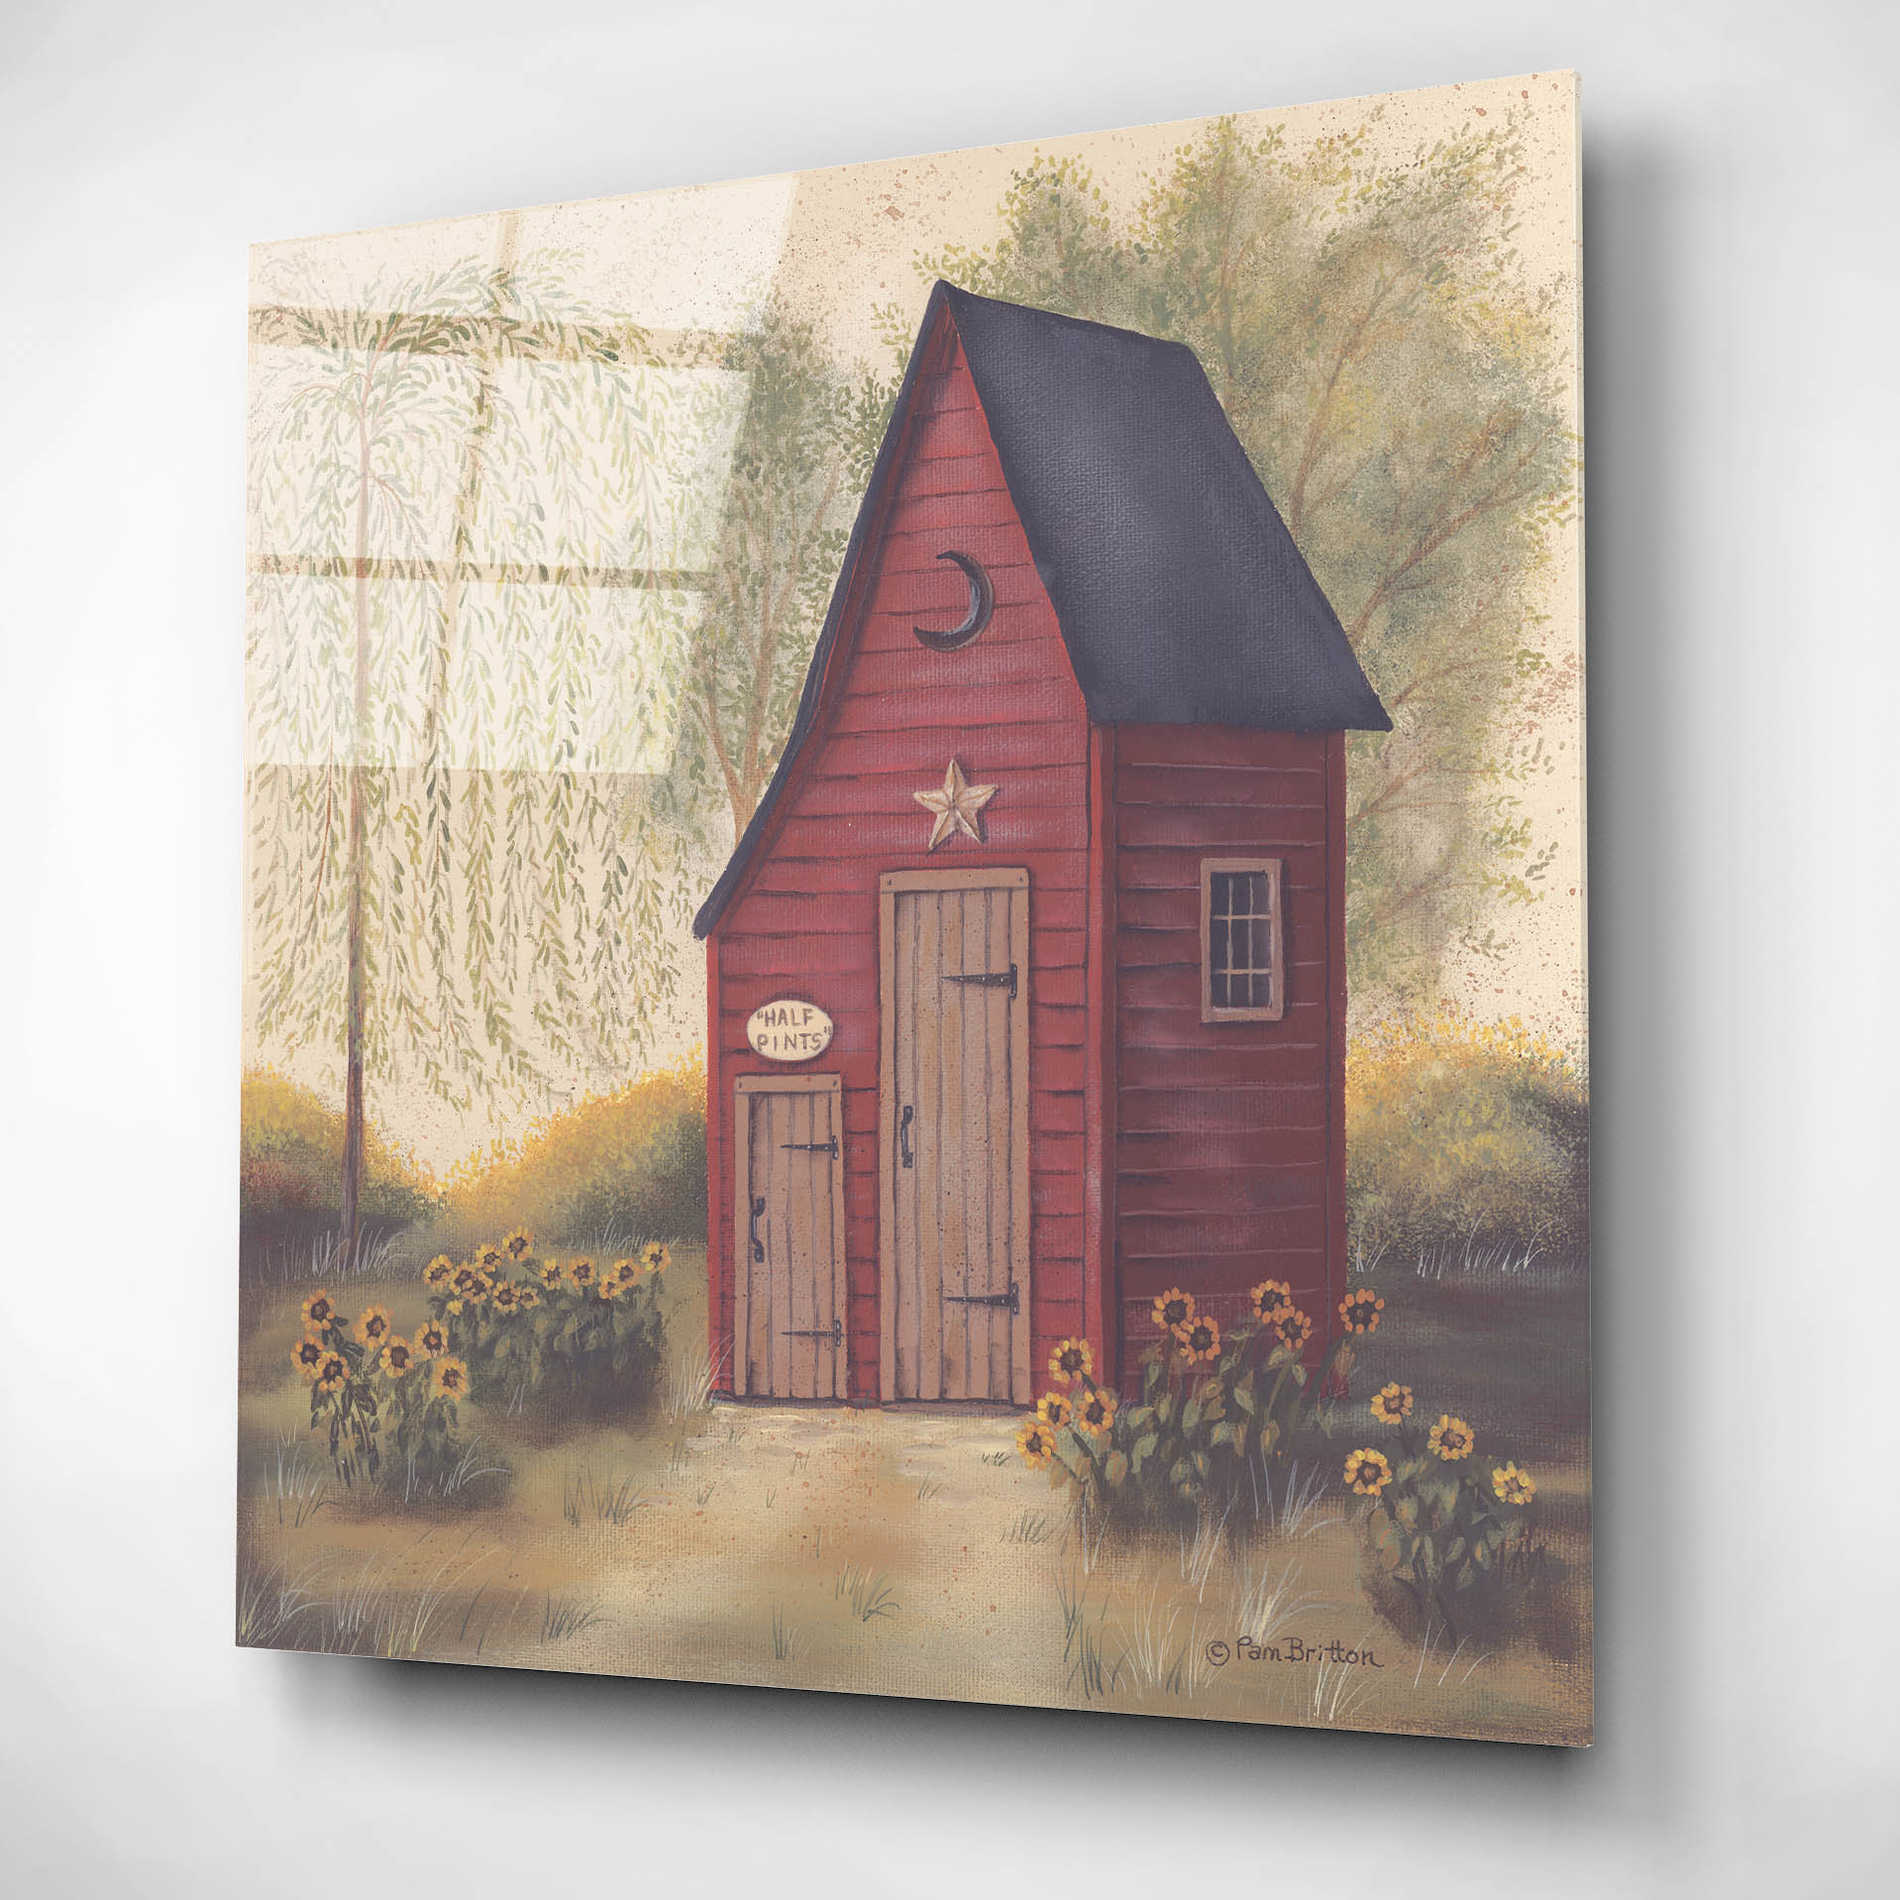 Epic Art 'Folk Art Outhouse II' by Pam Britton, Acrylic Glass Wall Art,12x12